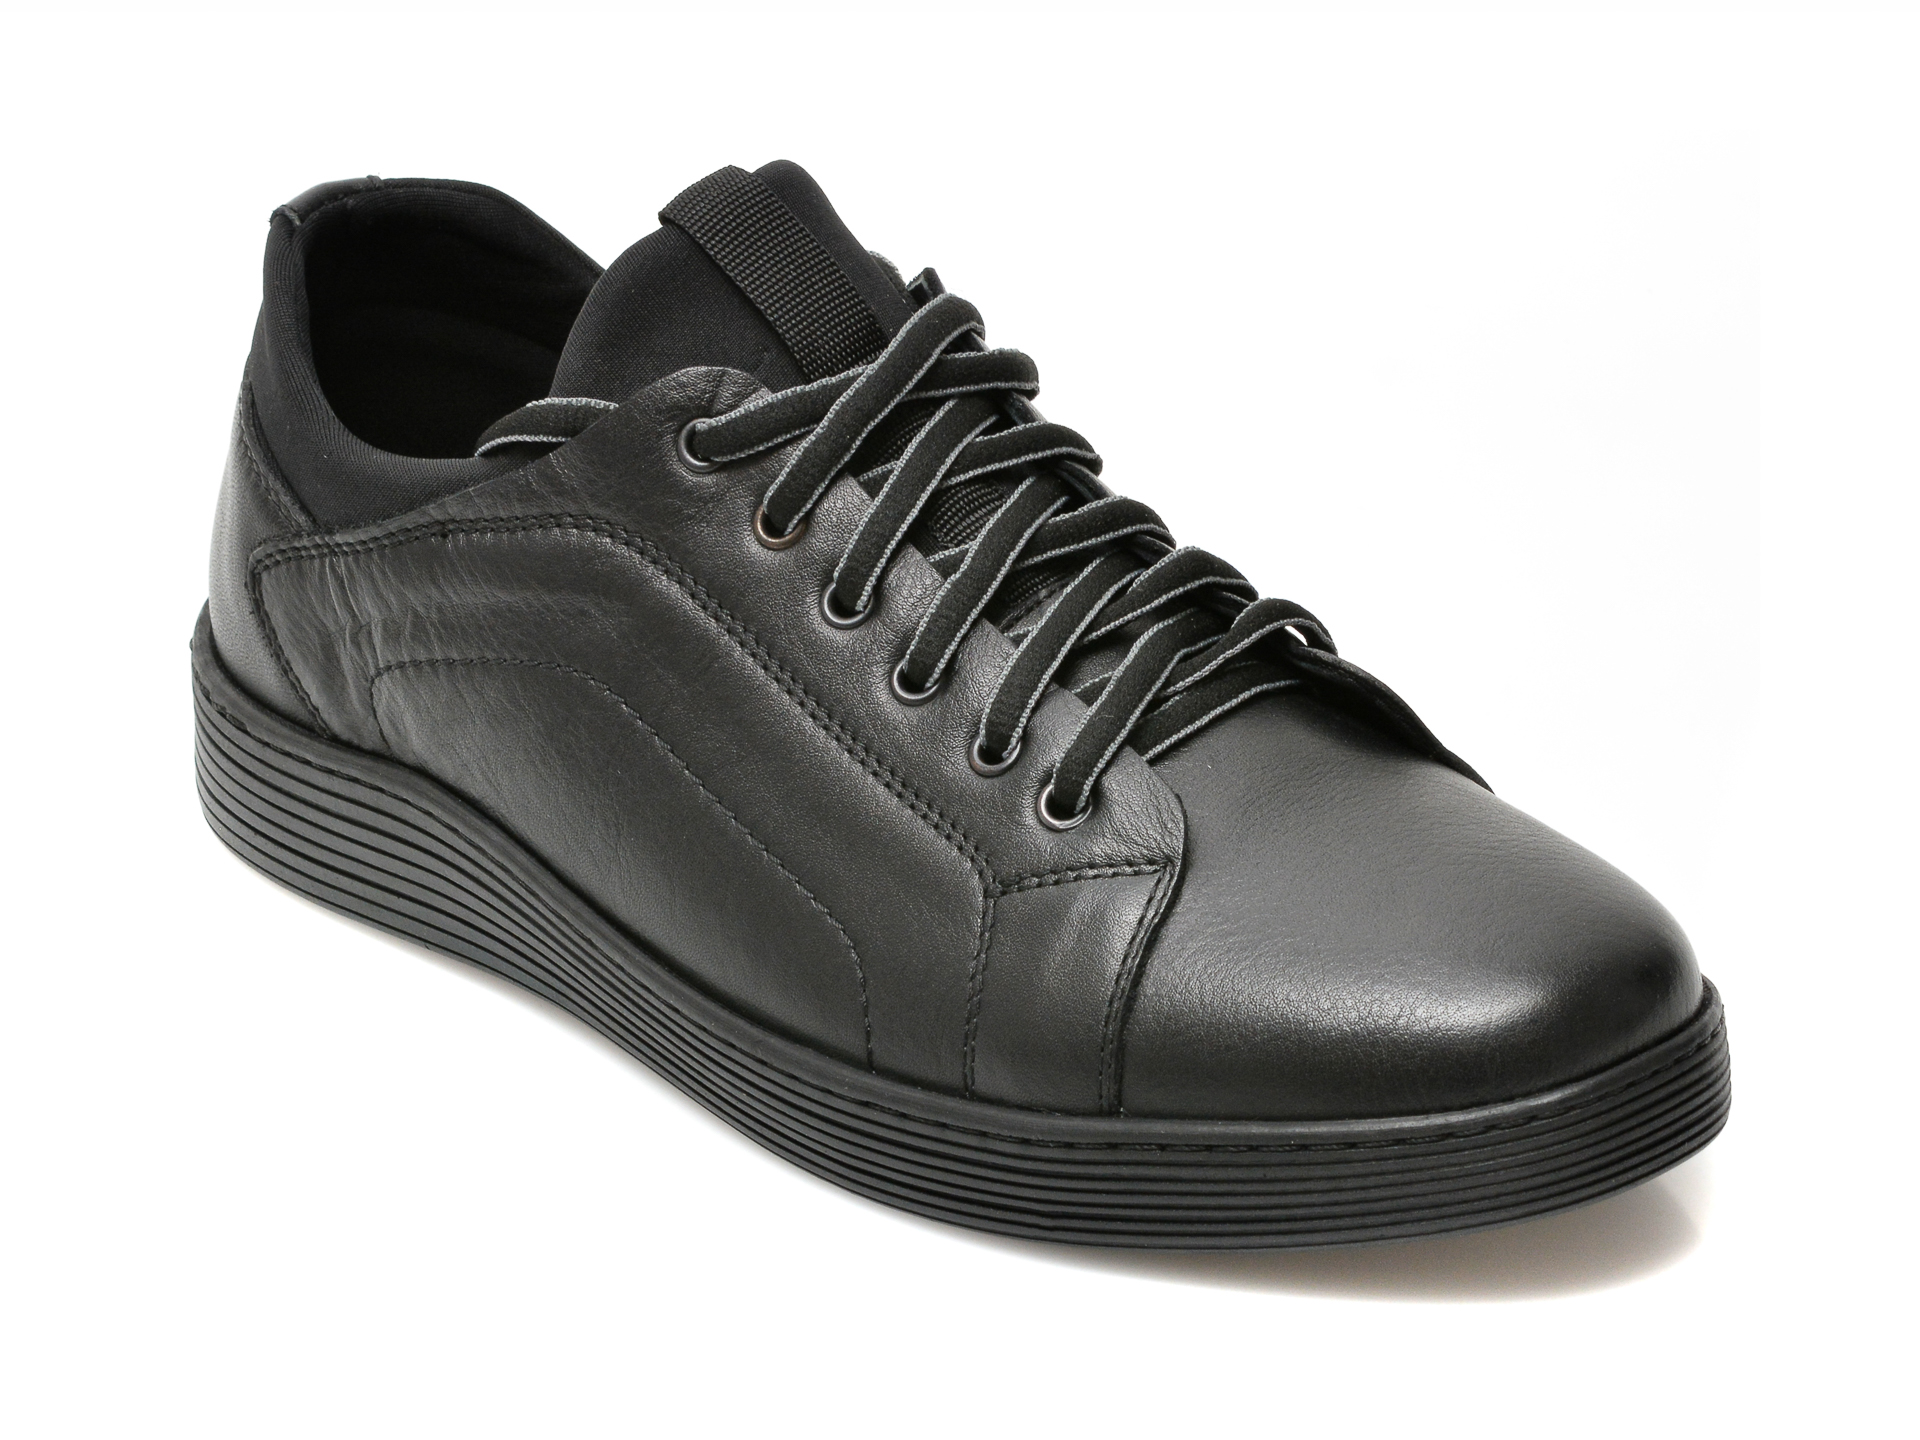 Pantofi OTTER negri, P03940, din piele naturala 2023 ❤️ Pret Super Black Friday otter.ro imagine noua 2022